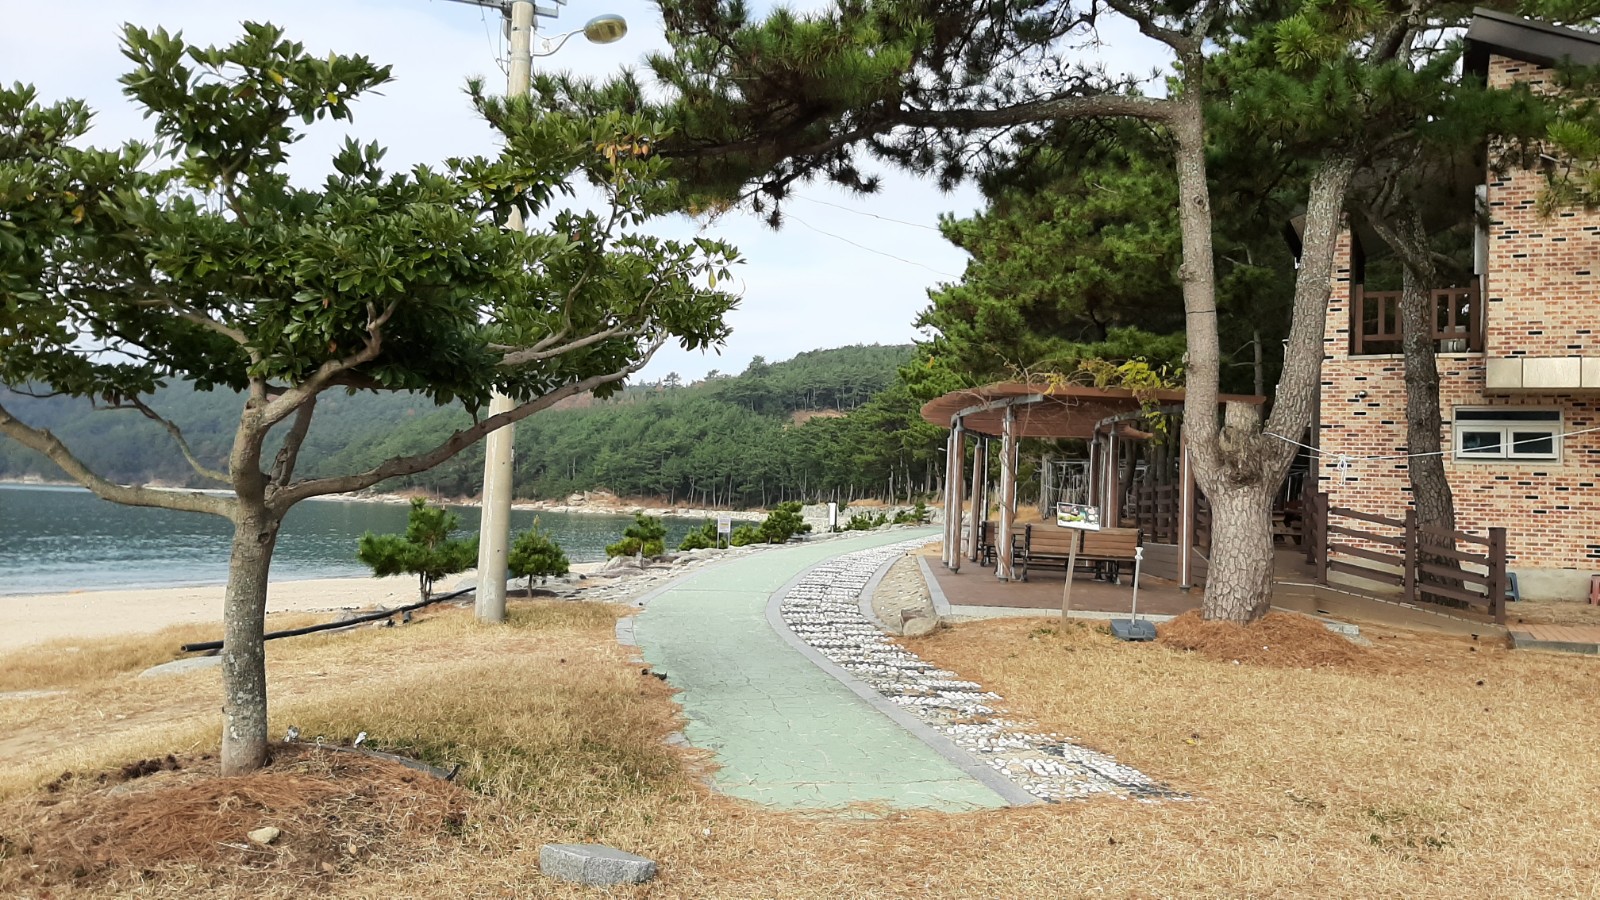 Photo de Yeonyeon Beach - endroit populaire parmi les connaisseurs de la détente